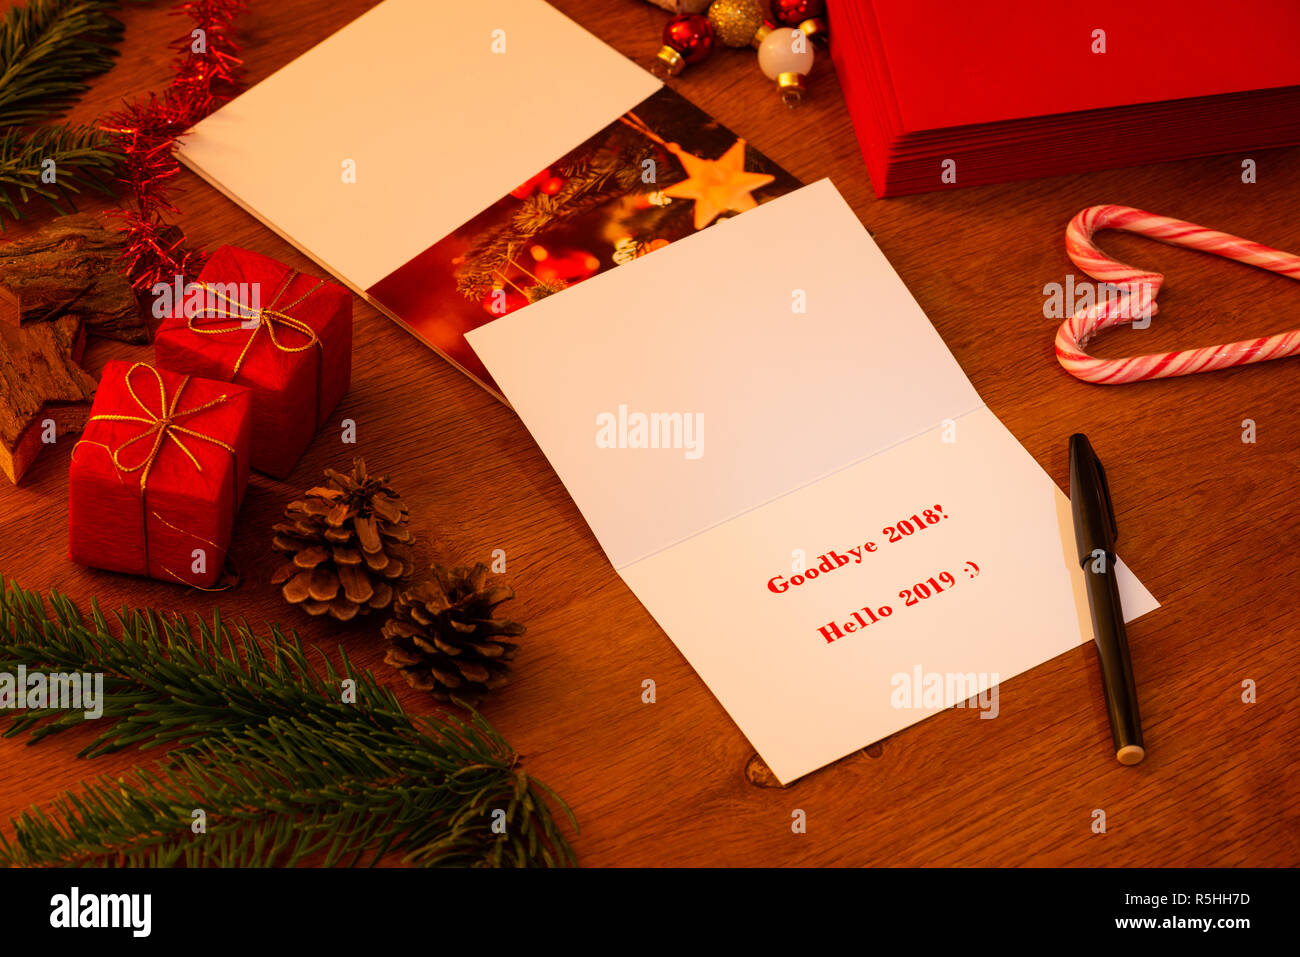 Auf Wiedersehen 2018 Hallo 2019 Weihnachten und Neujahr Karte, warten mit einem Marker unterzeichnet werden. Stapel von anderen Karten und Umschläge im Hintergrund. Stockfoto